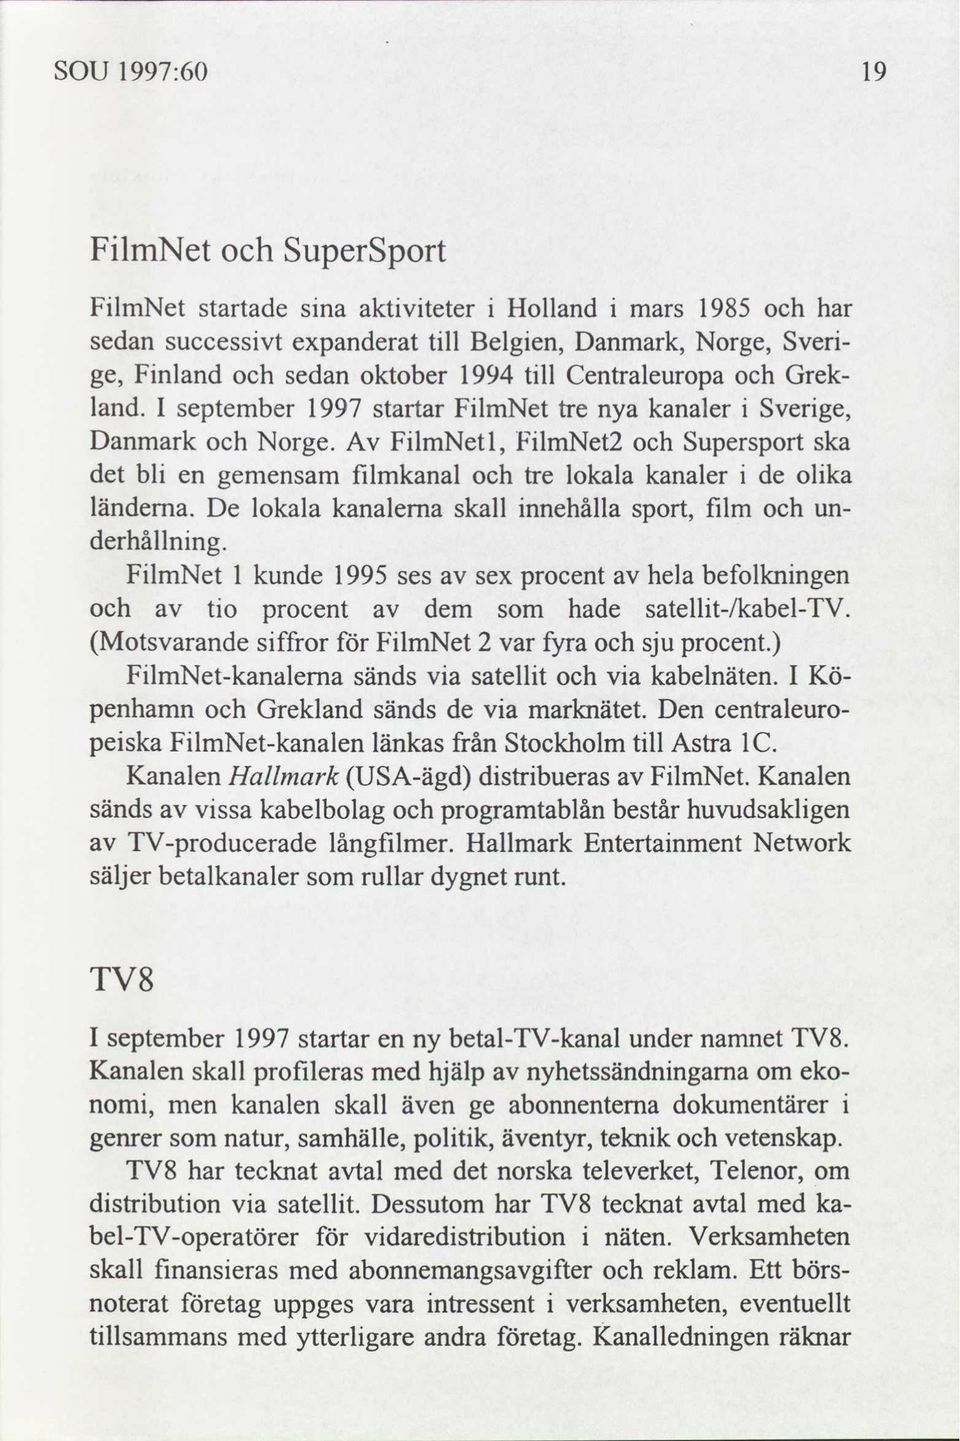 De lokala kanalerna nnehålla sport, flm underhållnng. FlmNet 1 kunde 1995 ses sex procent hela befolknngen to procent dem hade satellt-/kabel-tv. Motsvarande sffror for FlmNet 2 var fyra sju procent.